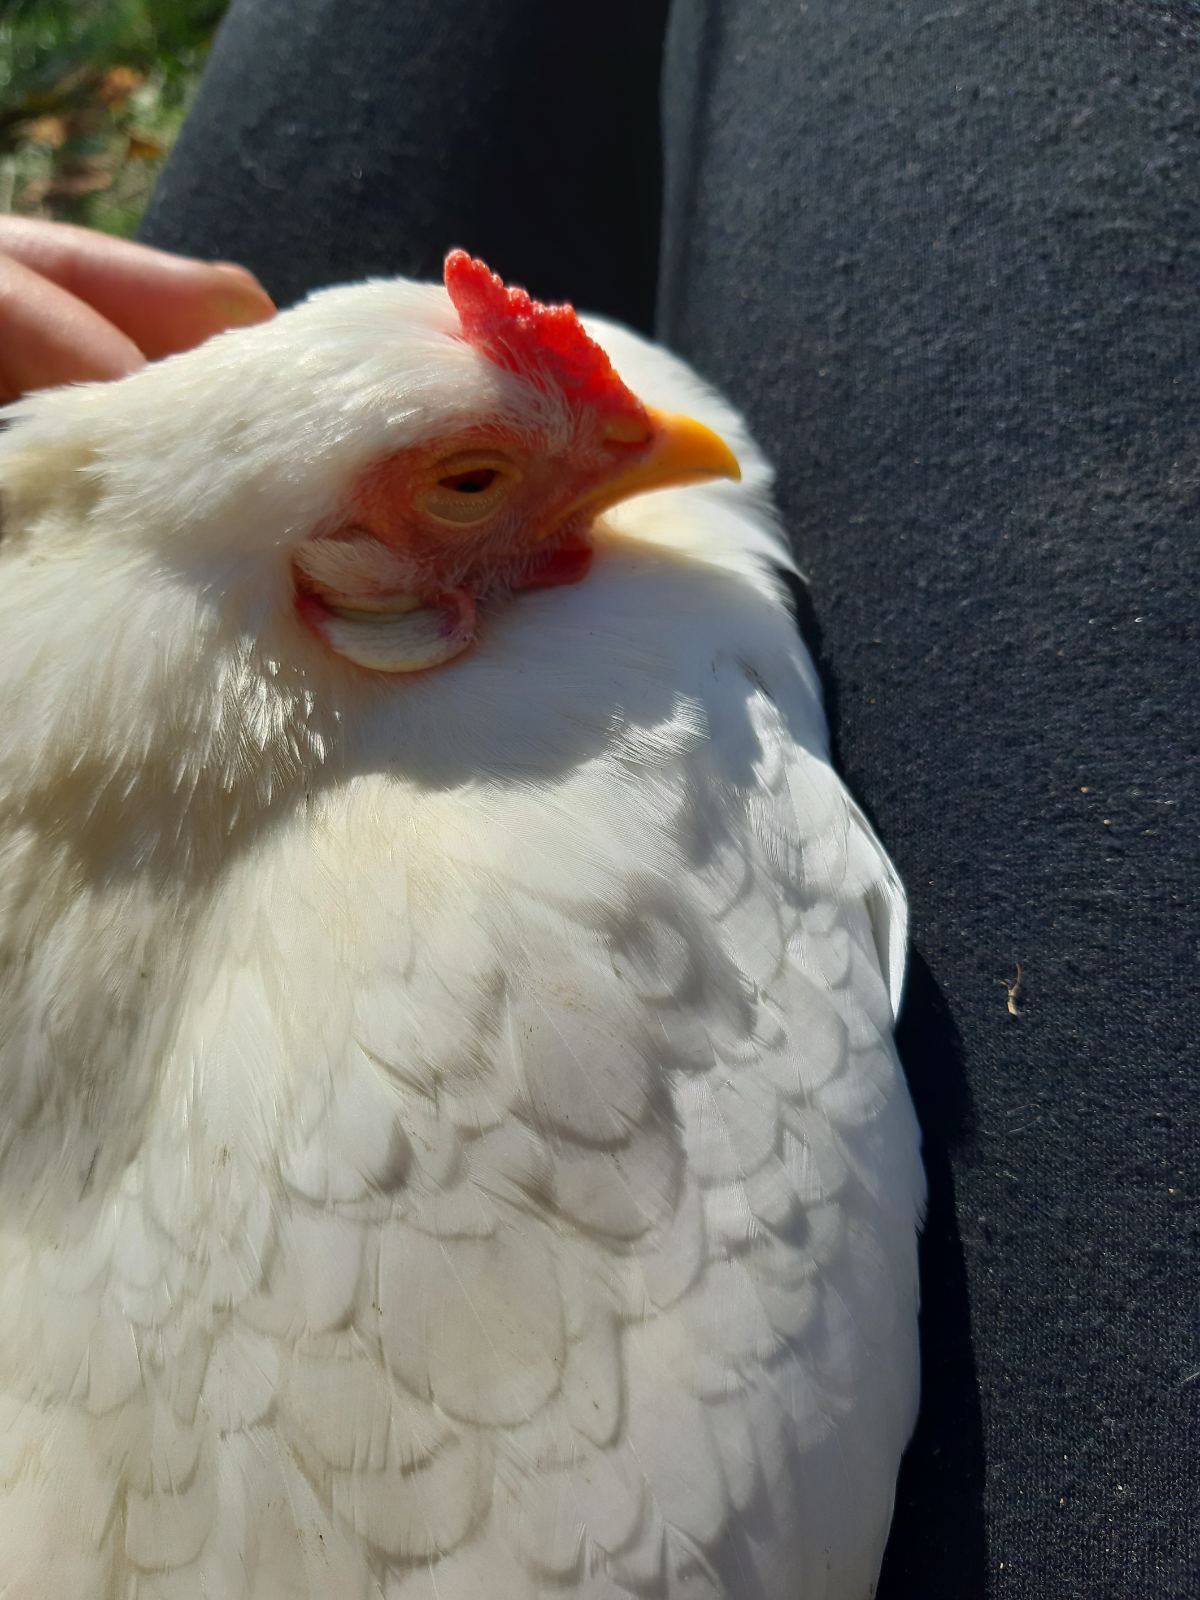 Urnebesni video iz Zagorja: Što je ljepše od ovoga? Koka sjedne u krilo i evo ti jaje na oko...